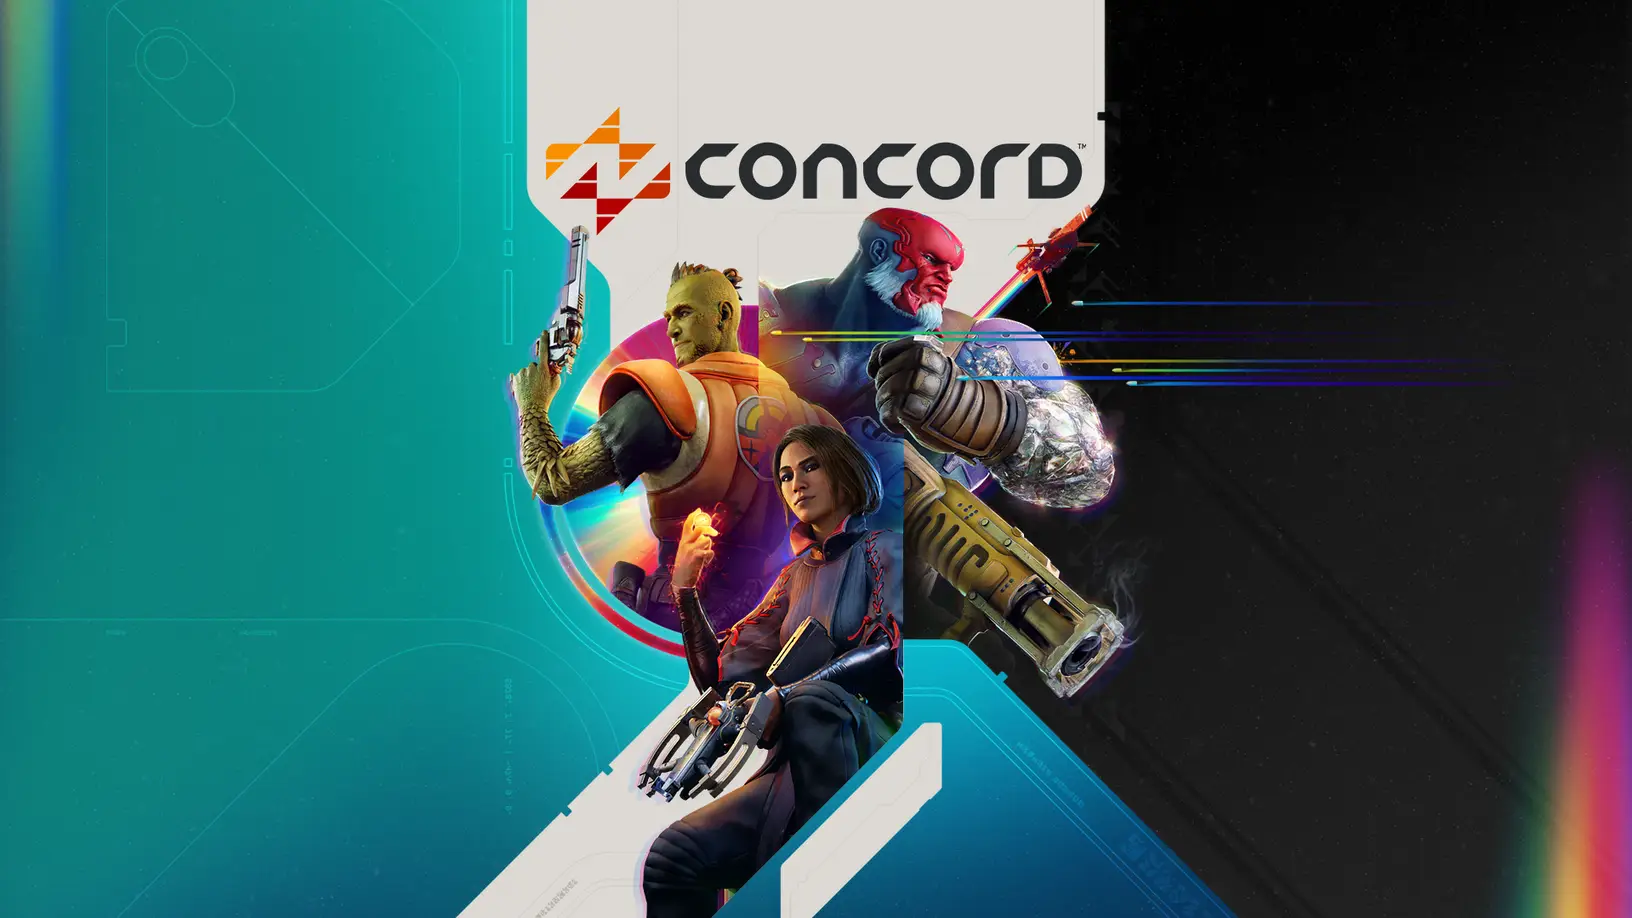 Concord beta